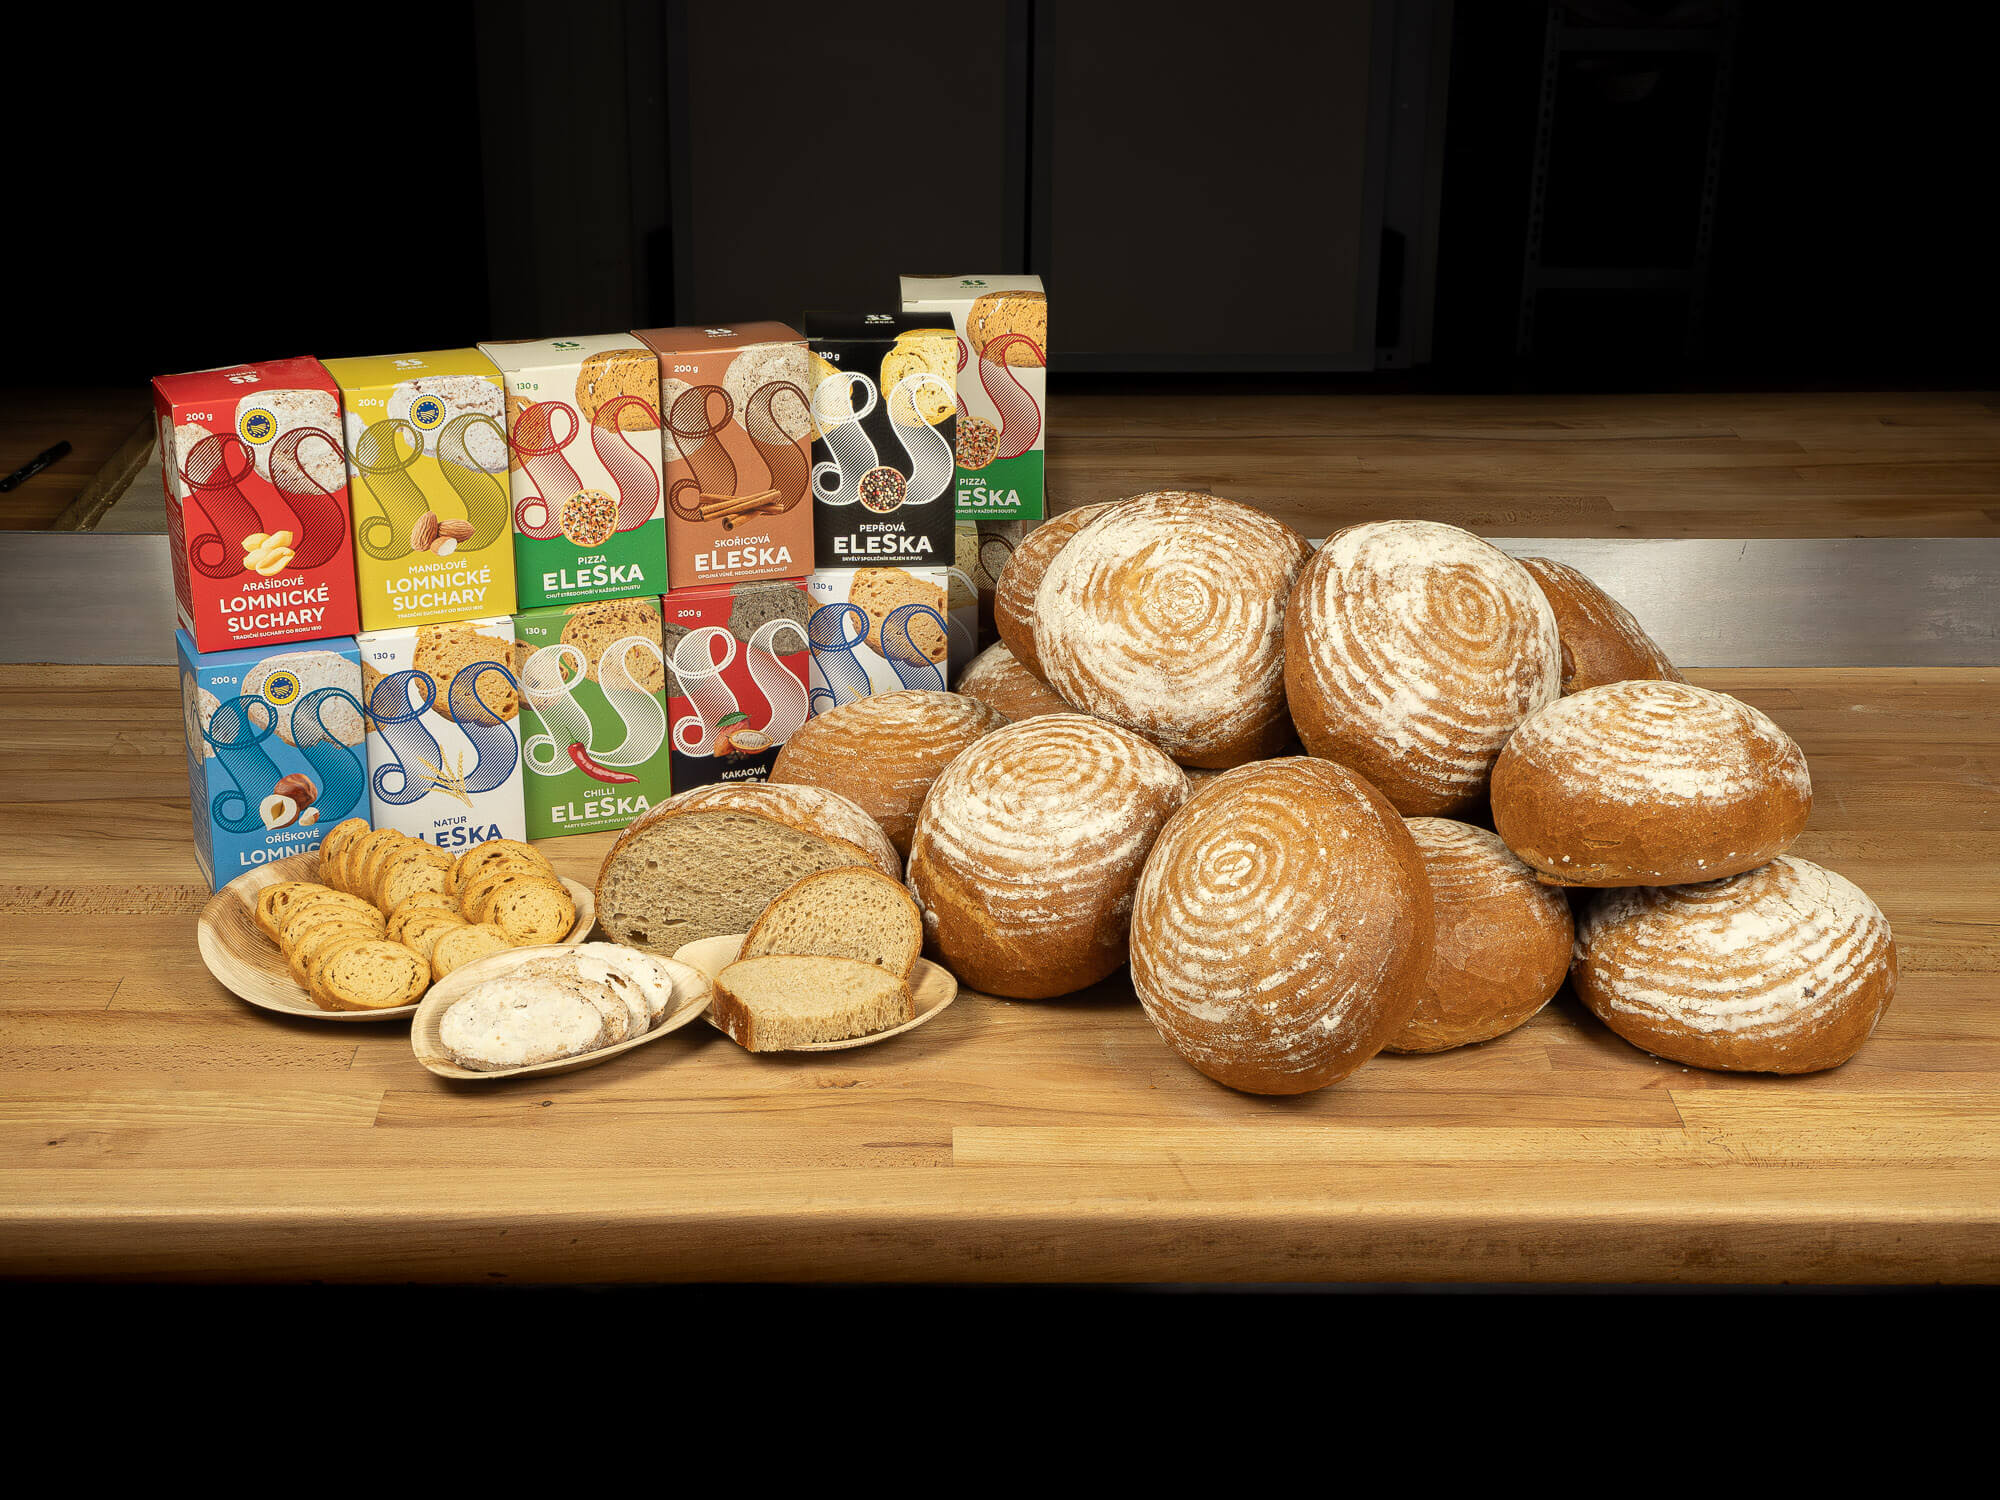 Sortiment Lomnické pekárny - ELESKA, Lomnické suchary, Lomnický chléb (světlý, podmáslový)